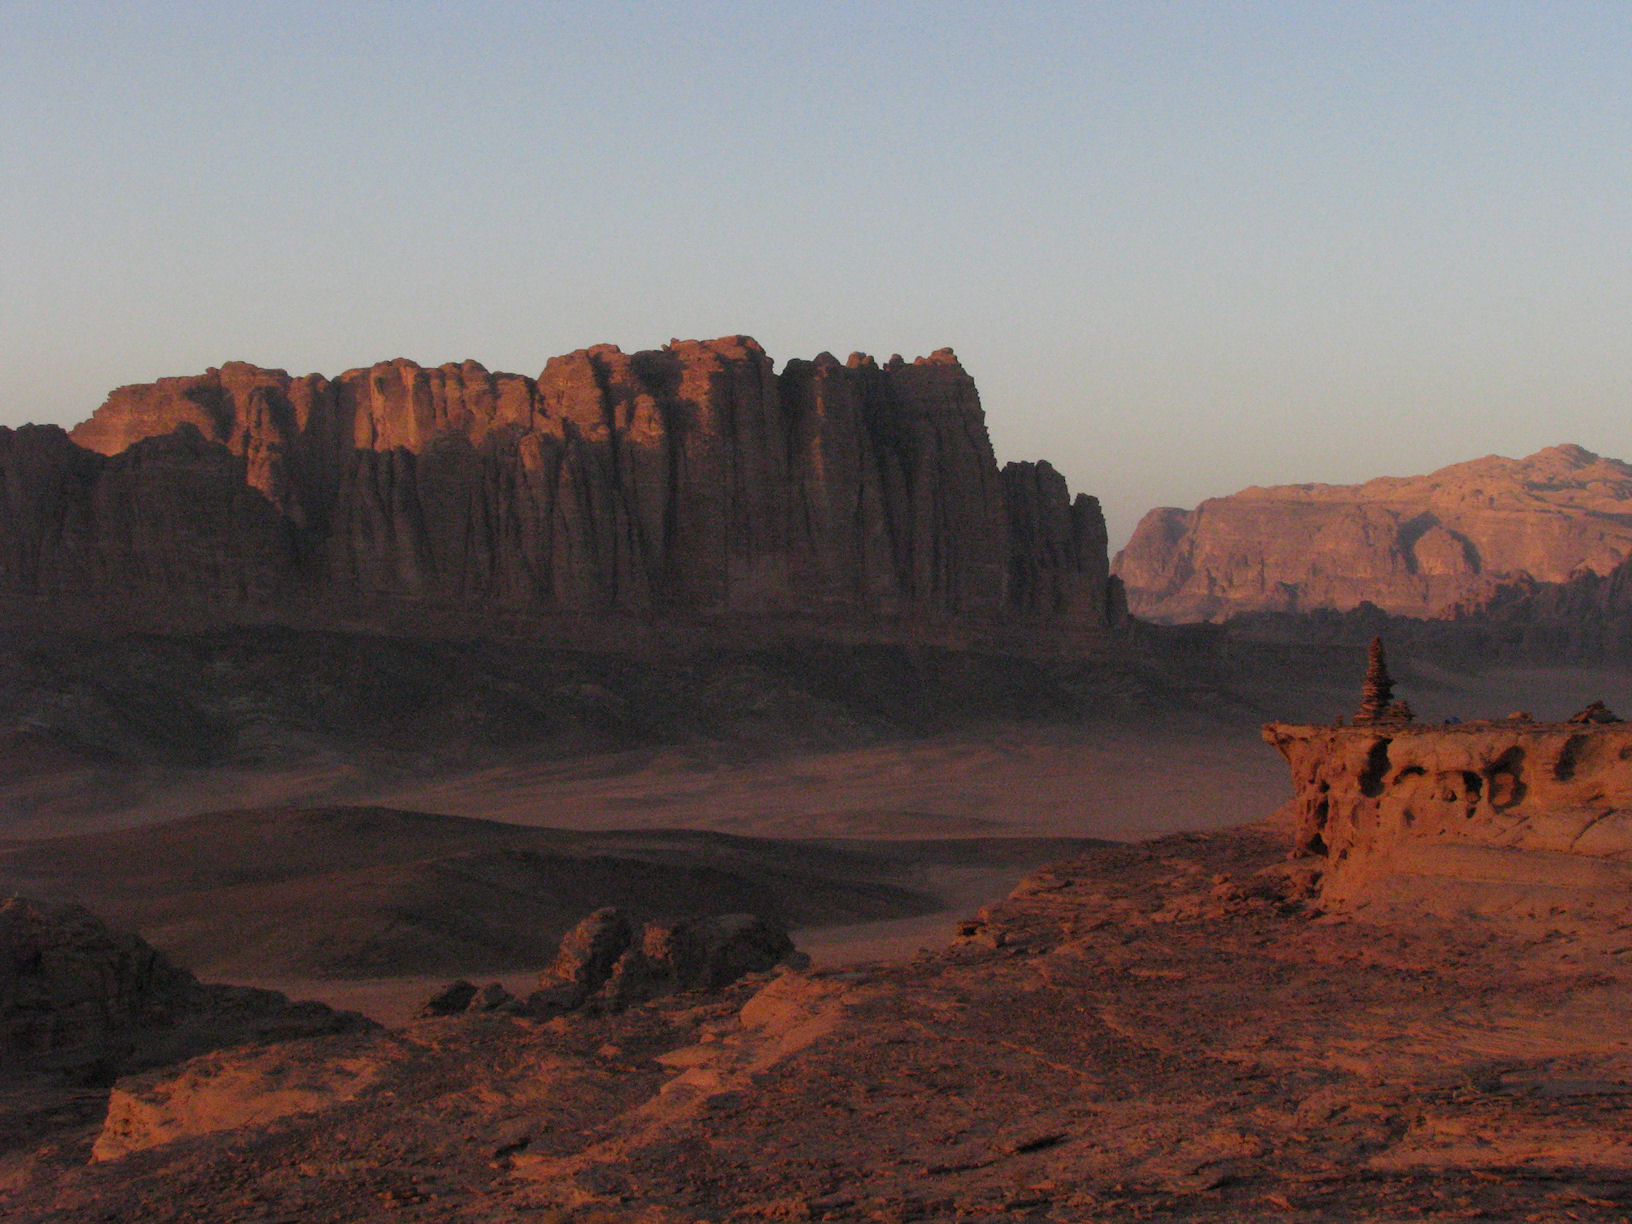 El Qattar, Wadi Rum